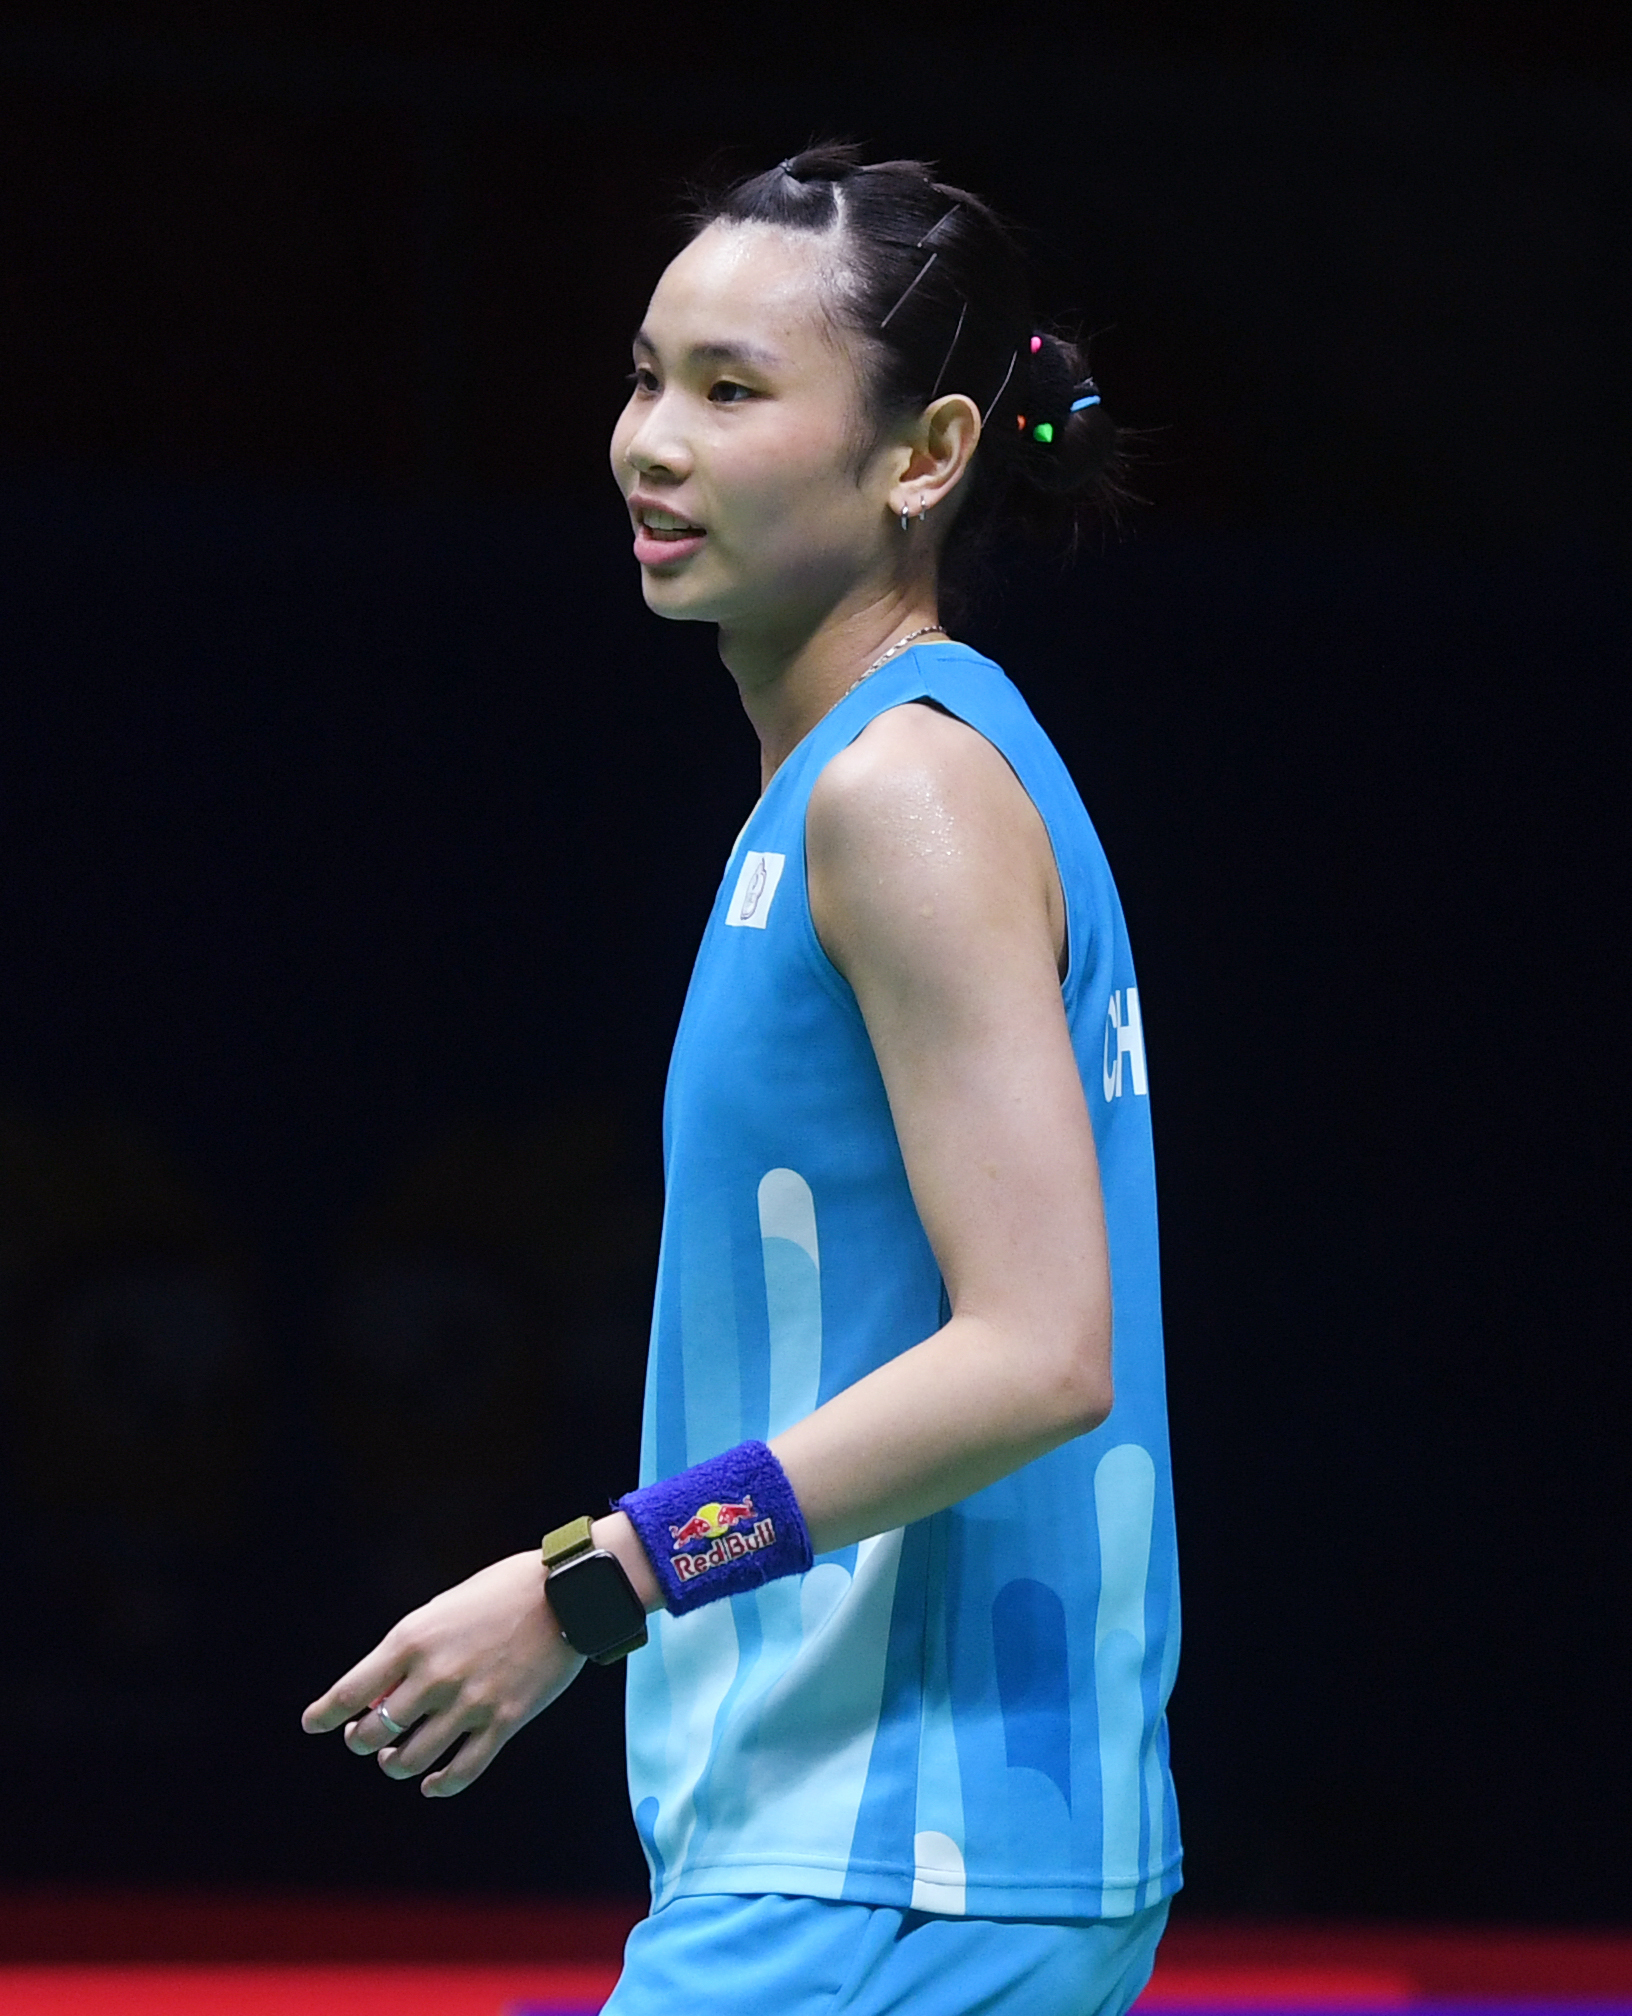 5月24日,中国台北队选手戴资颖在女子单打比赛中回球她